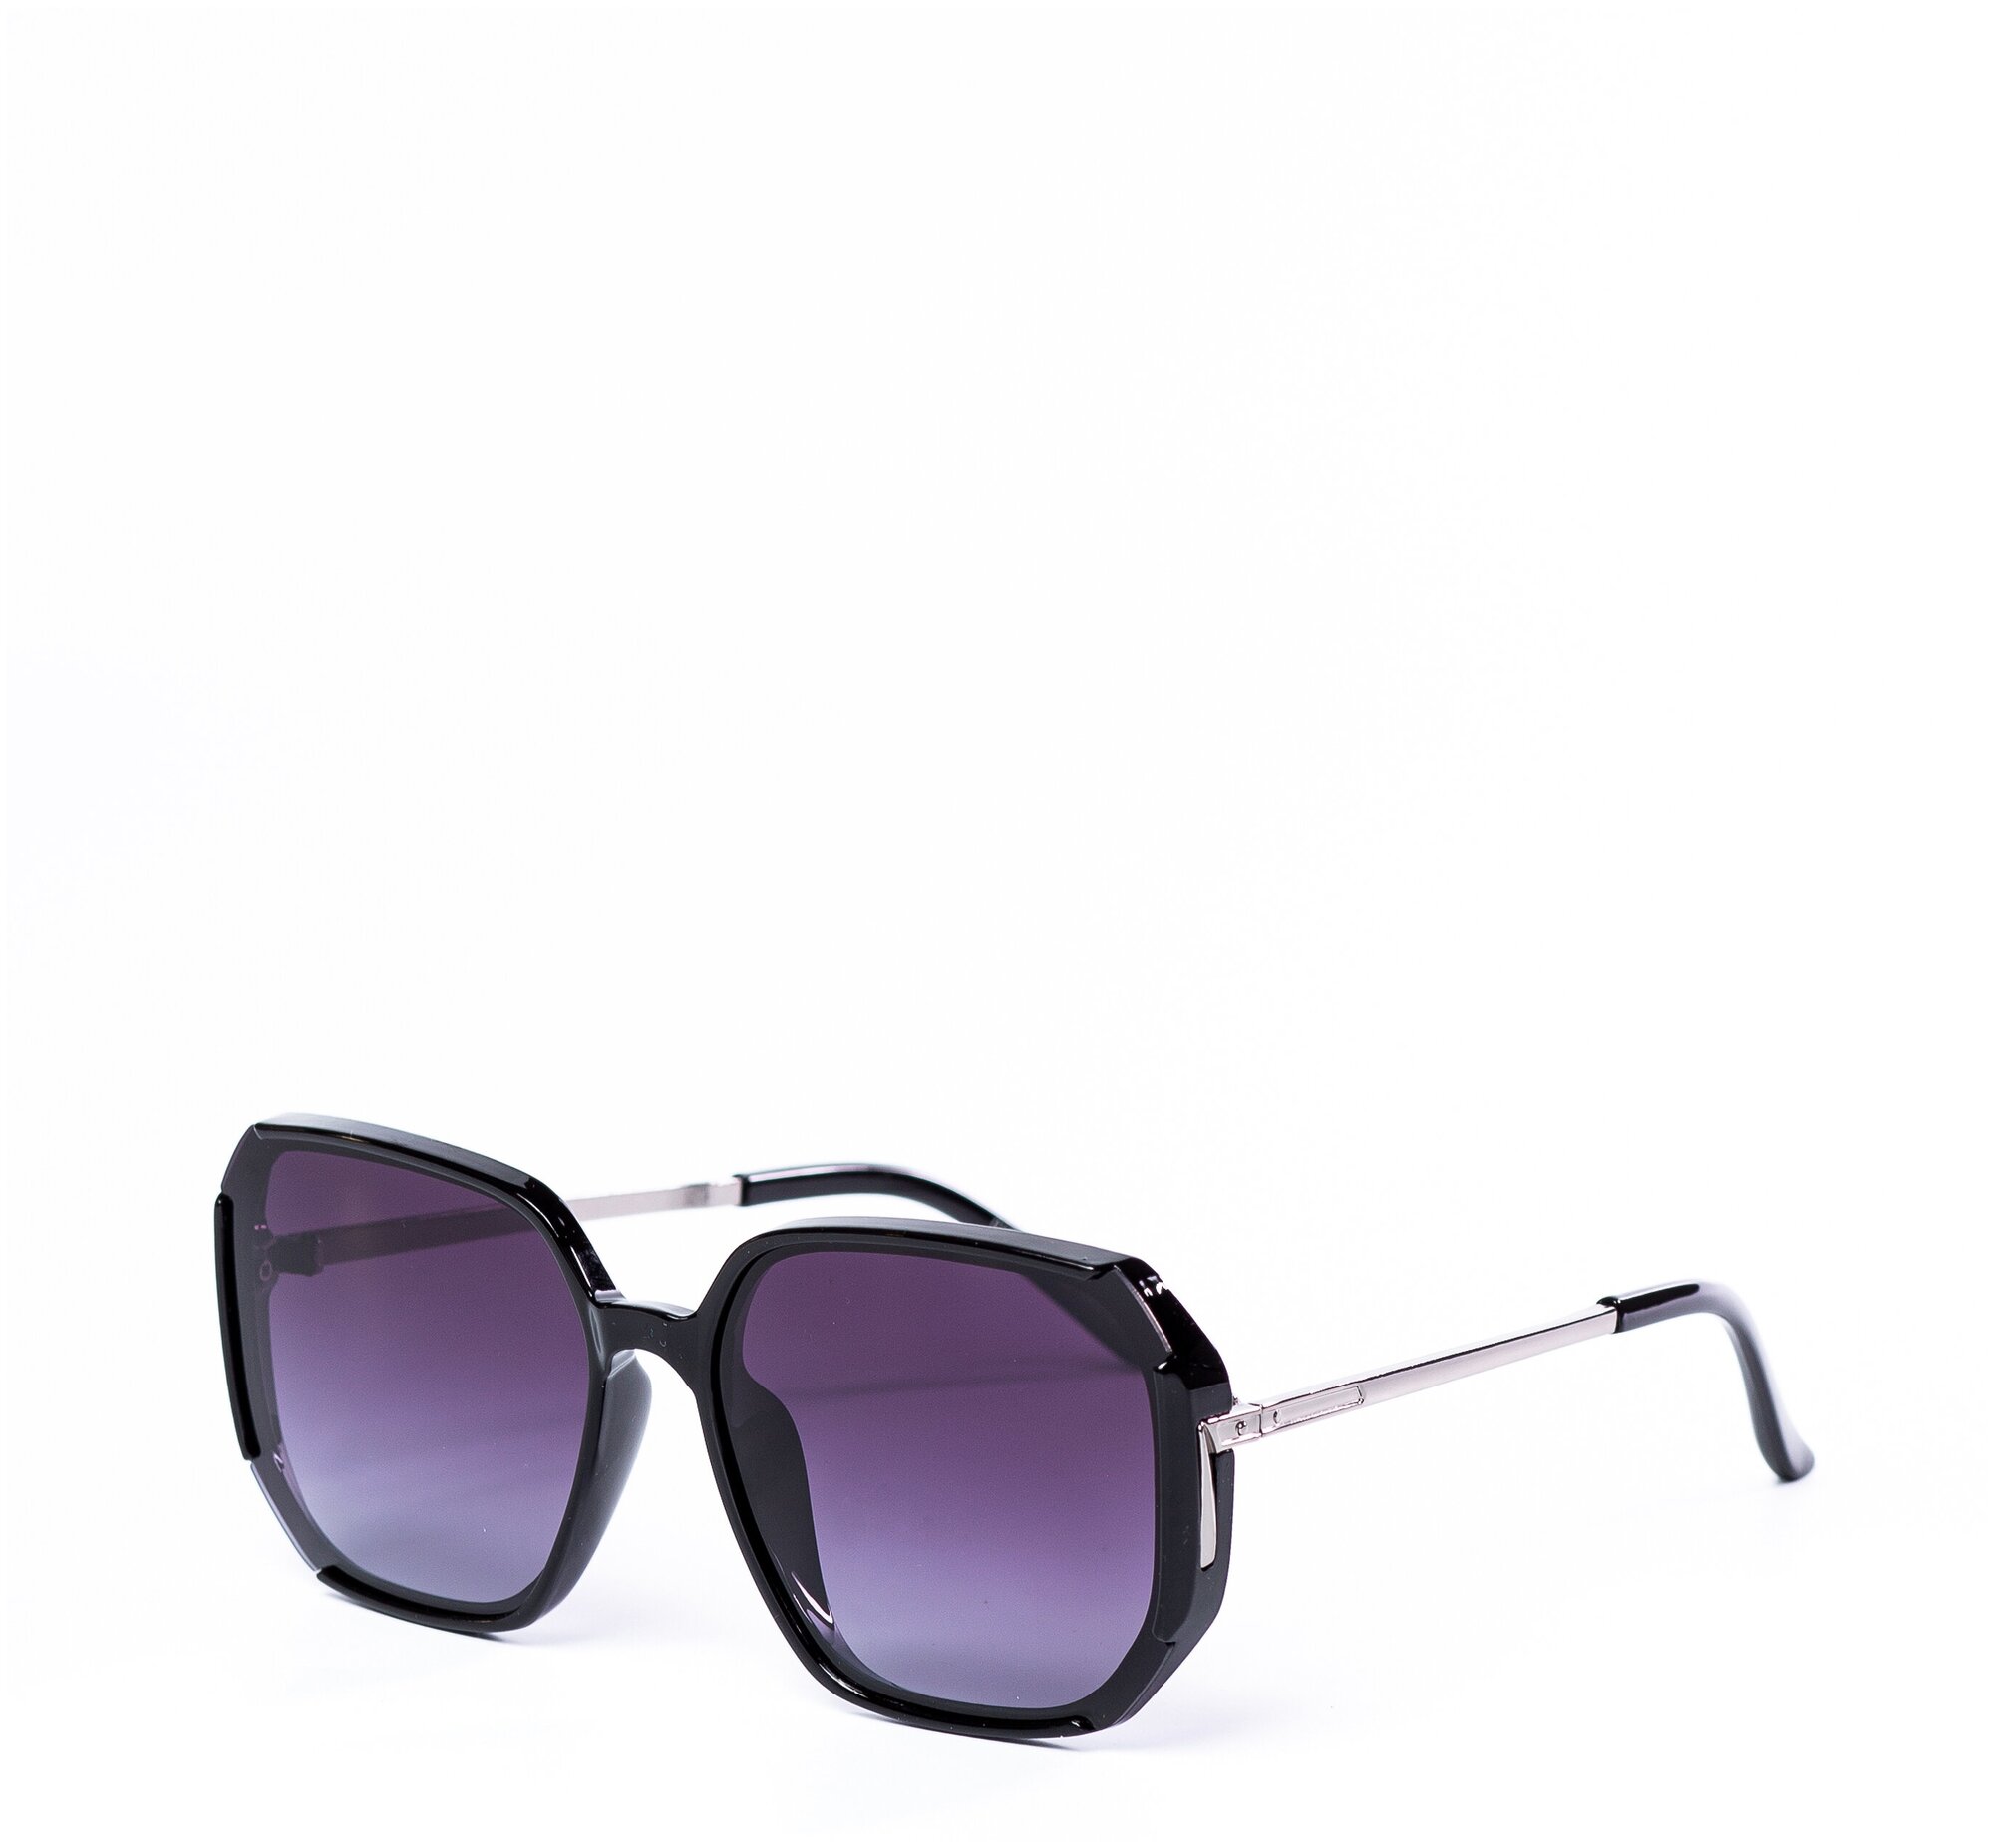 Солнцезащитные очки женские / Оправа квадратная / Стильные очки / Ультрафиолетовый фильтр / Защита UV400 / Чехол в подарок / Темные очки 200422552